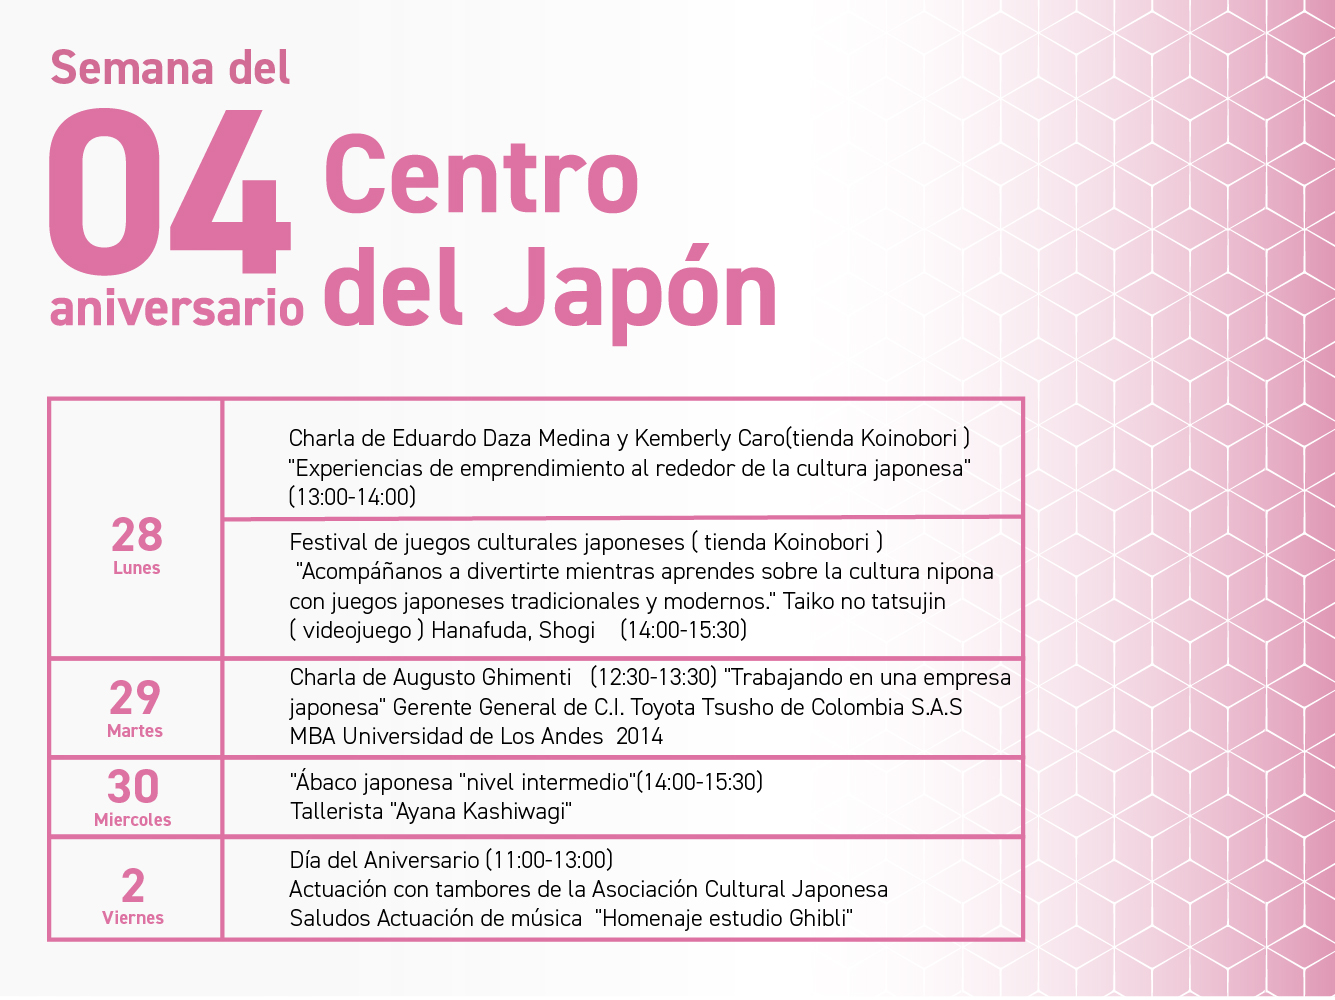 Semana del 04 aniversario Centro del Japón